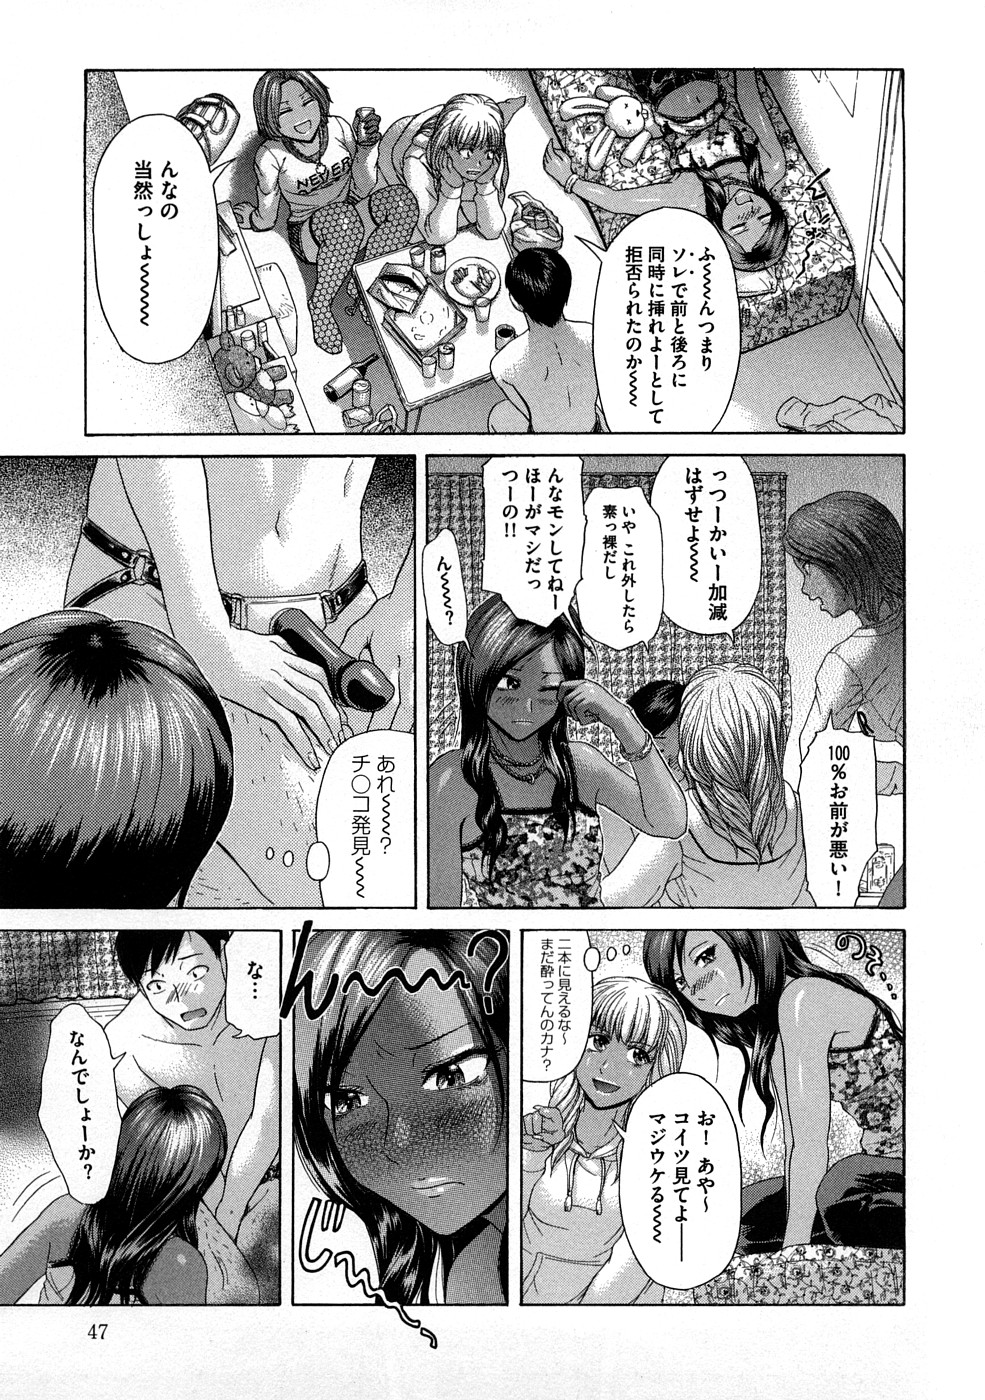 [Kogaino] Yabakune page 48 full